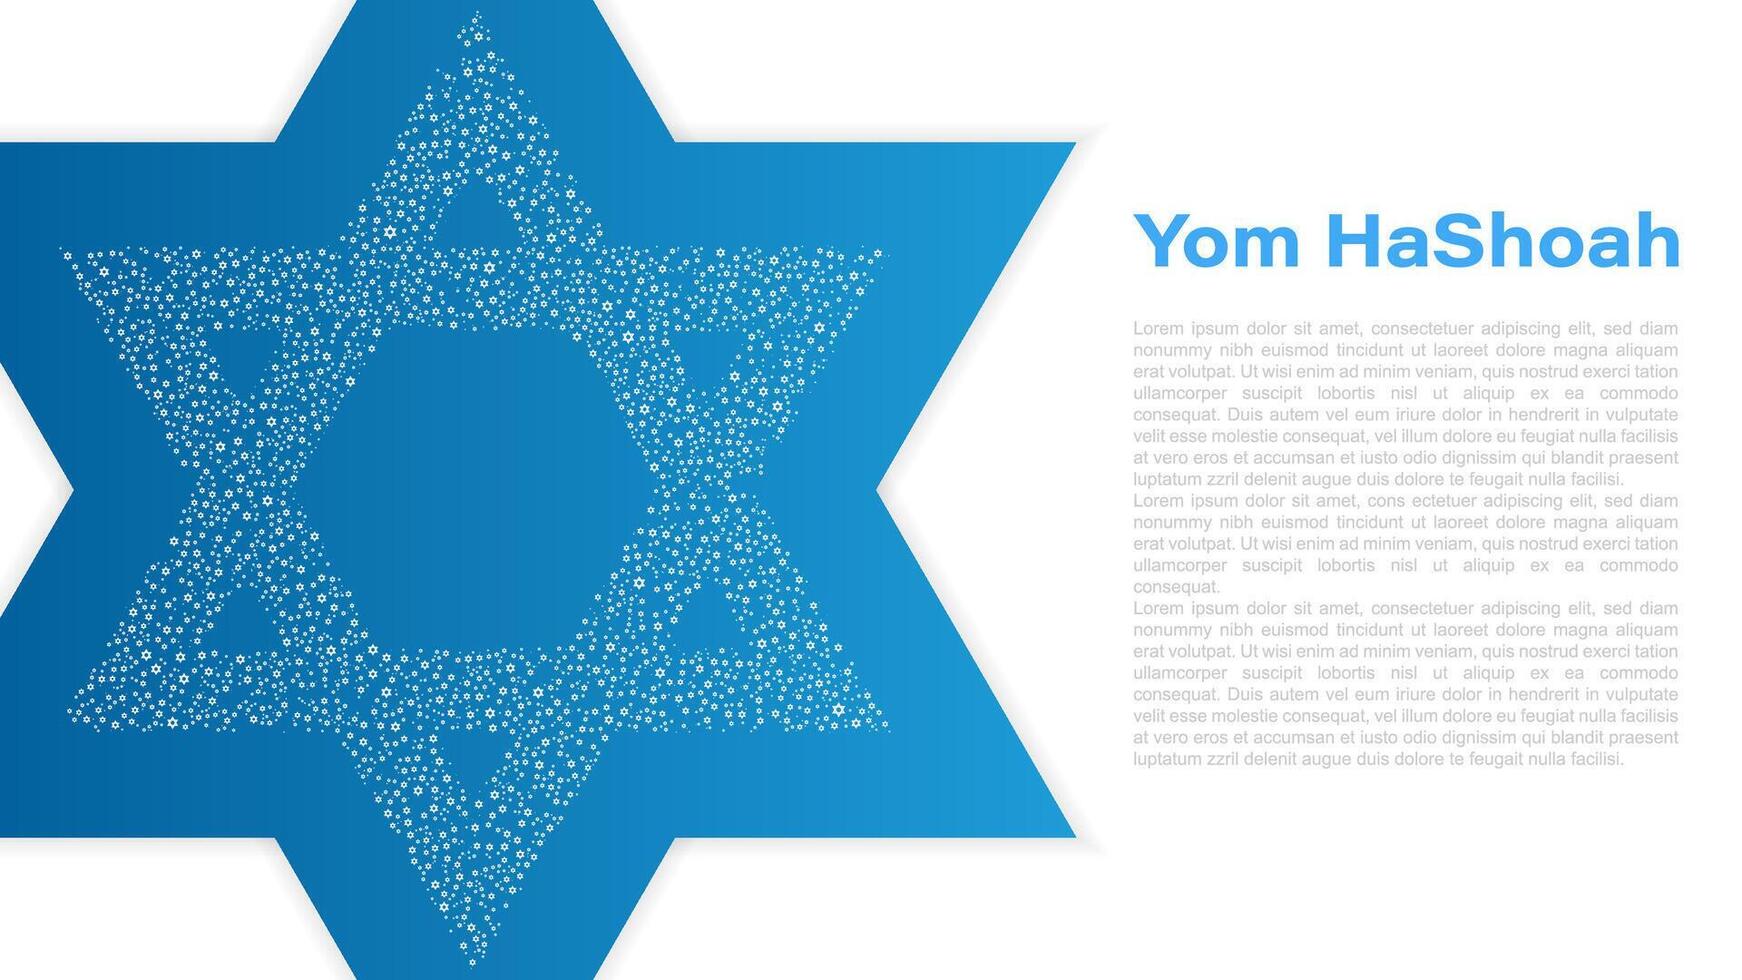 yom hashoá, holocausto remembranza día, ilustración vector